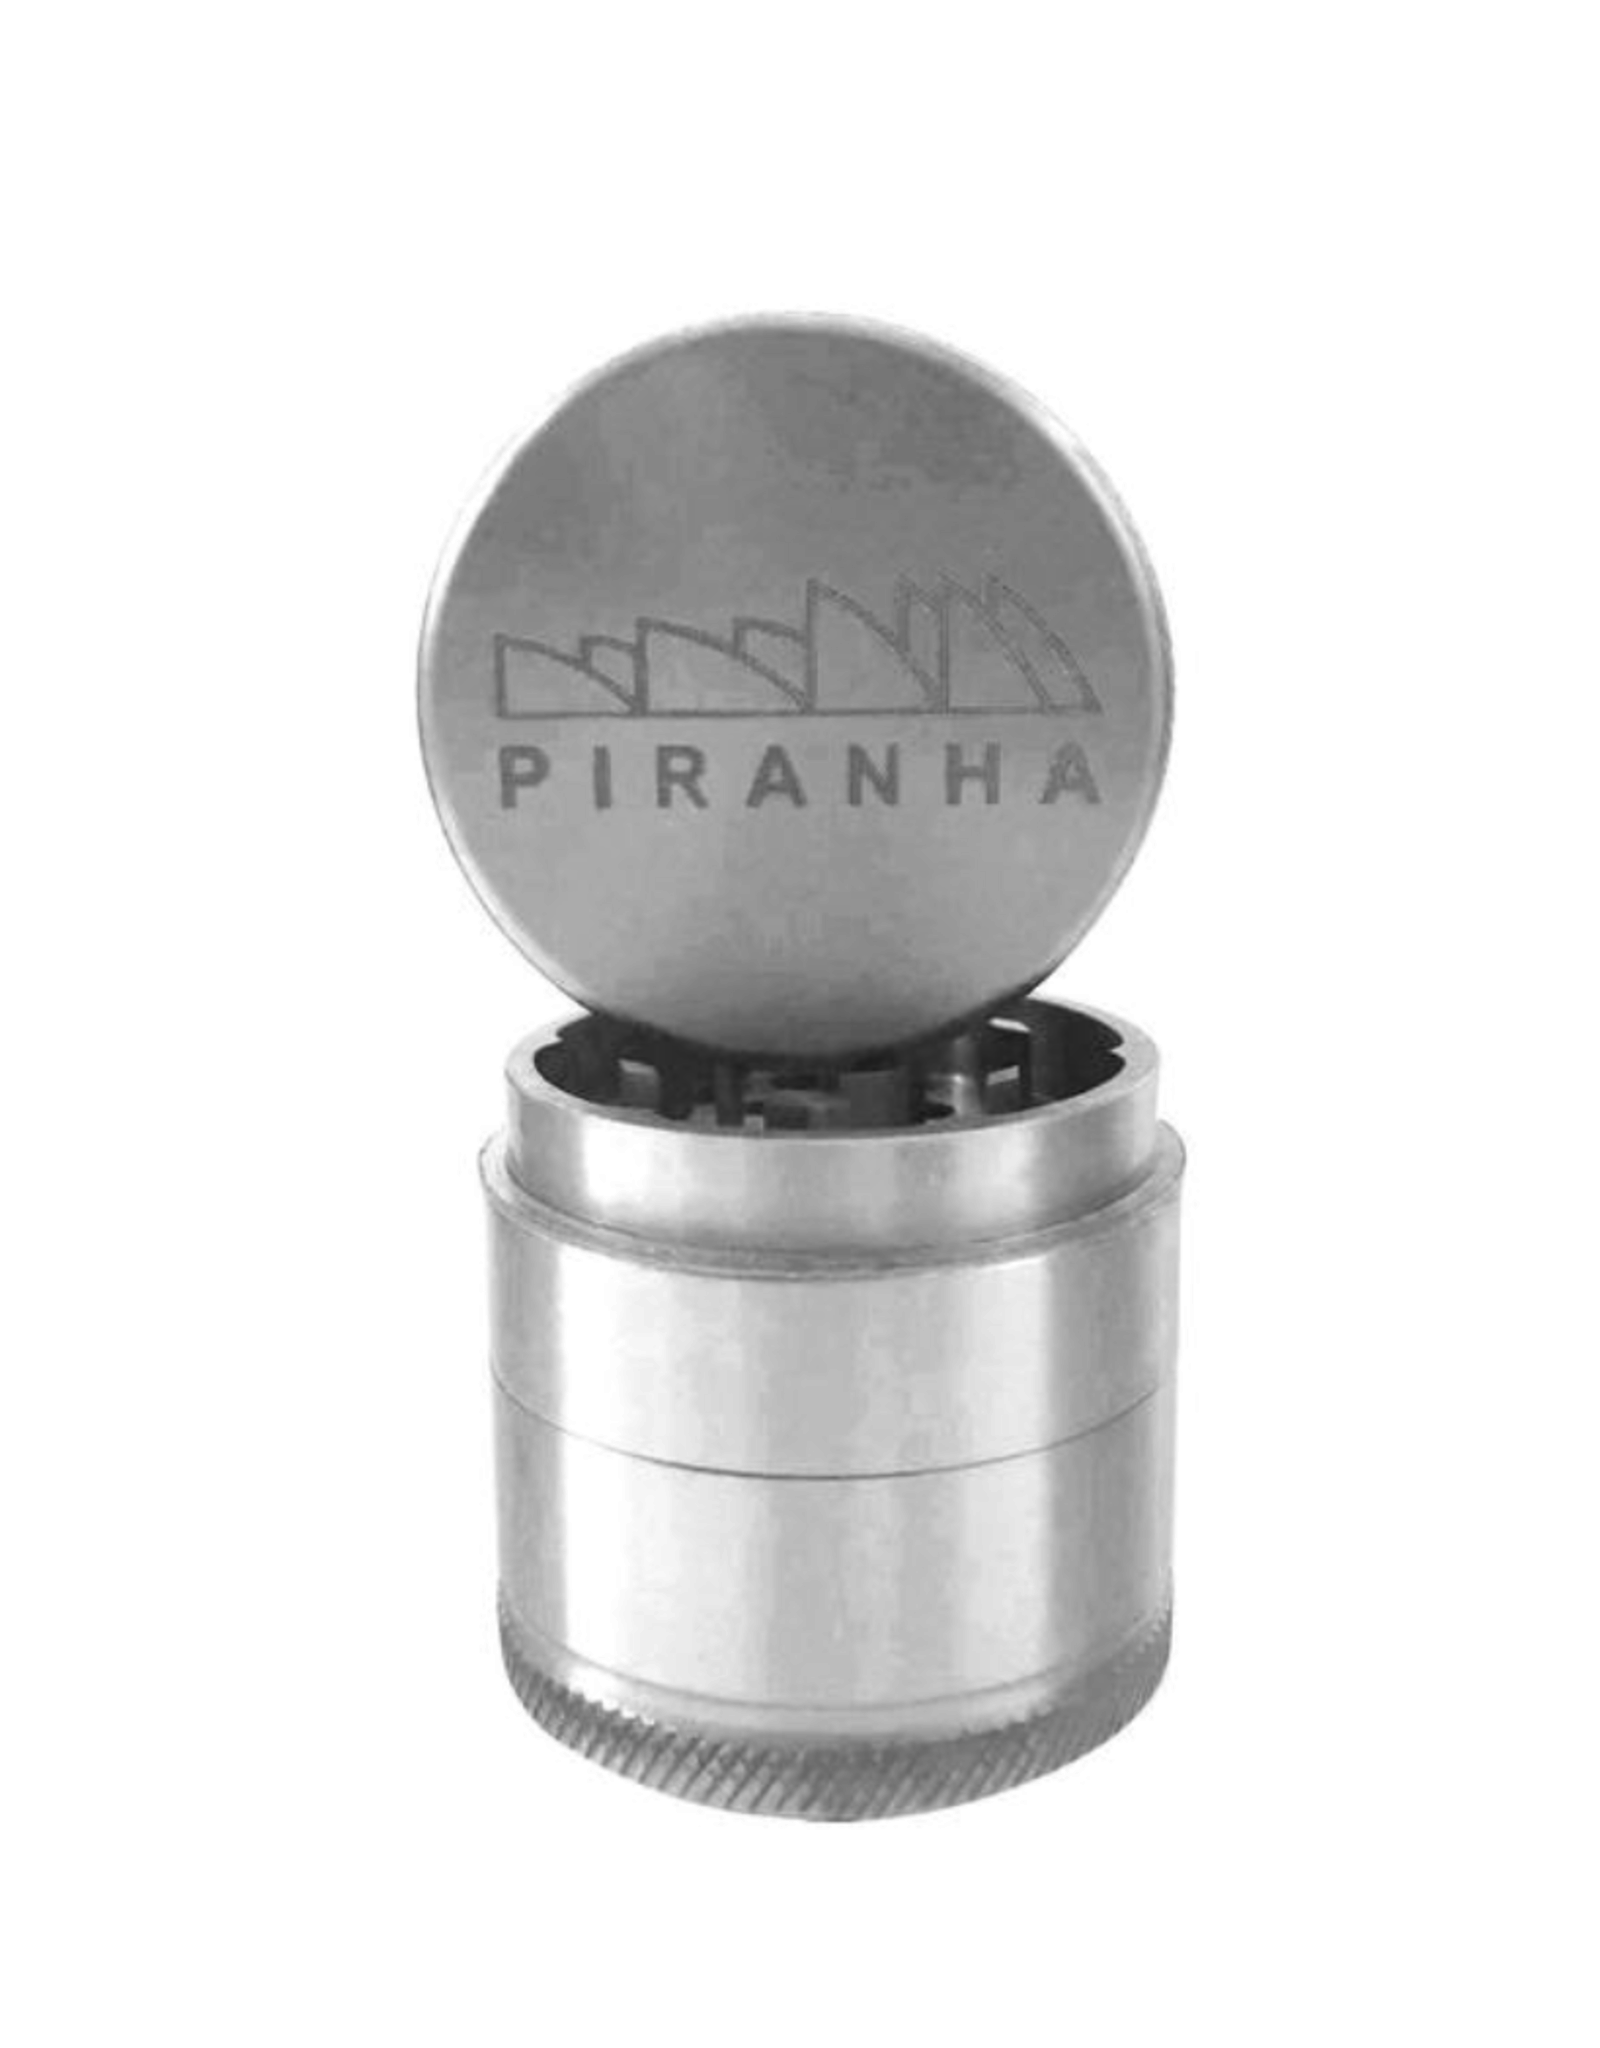 Piranha 2.0" 3 Piece Grinder